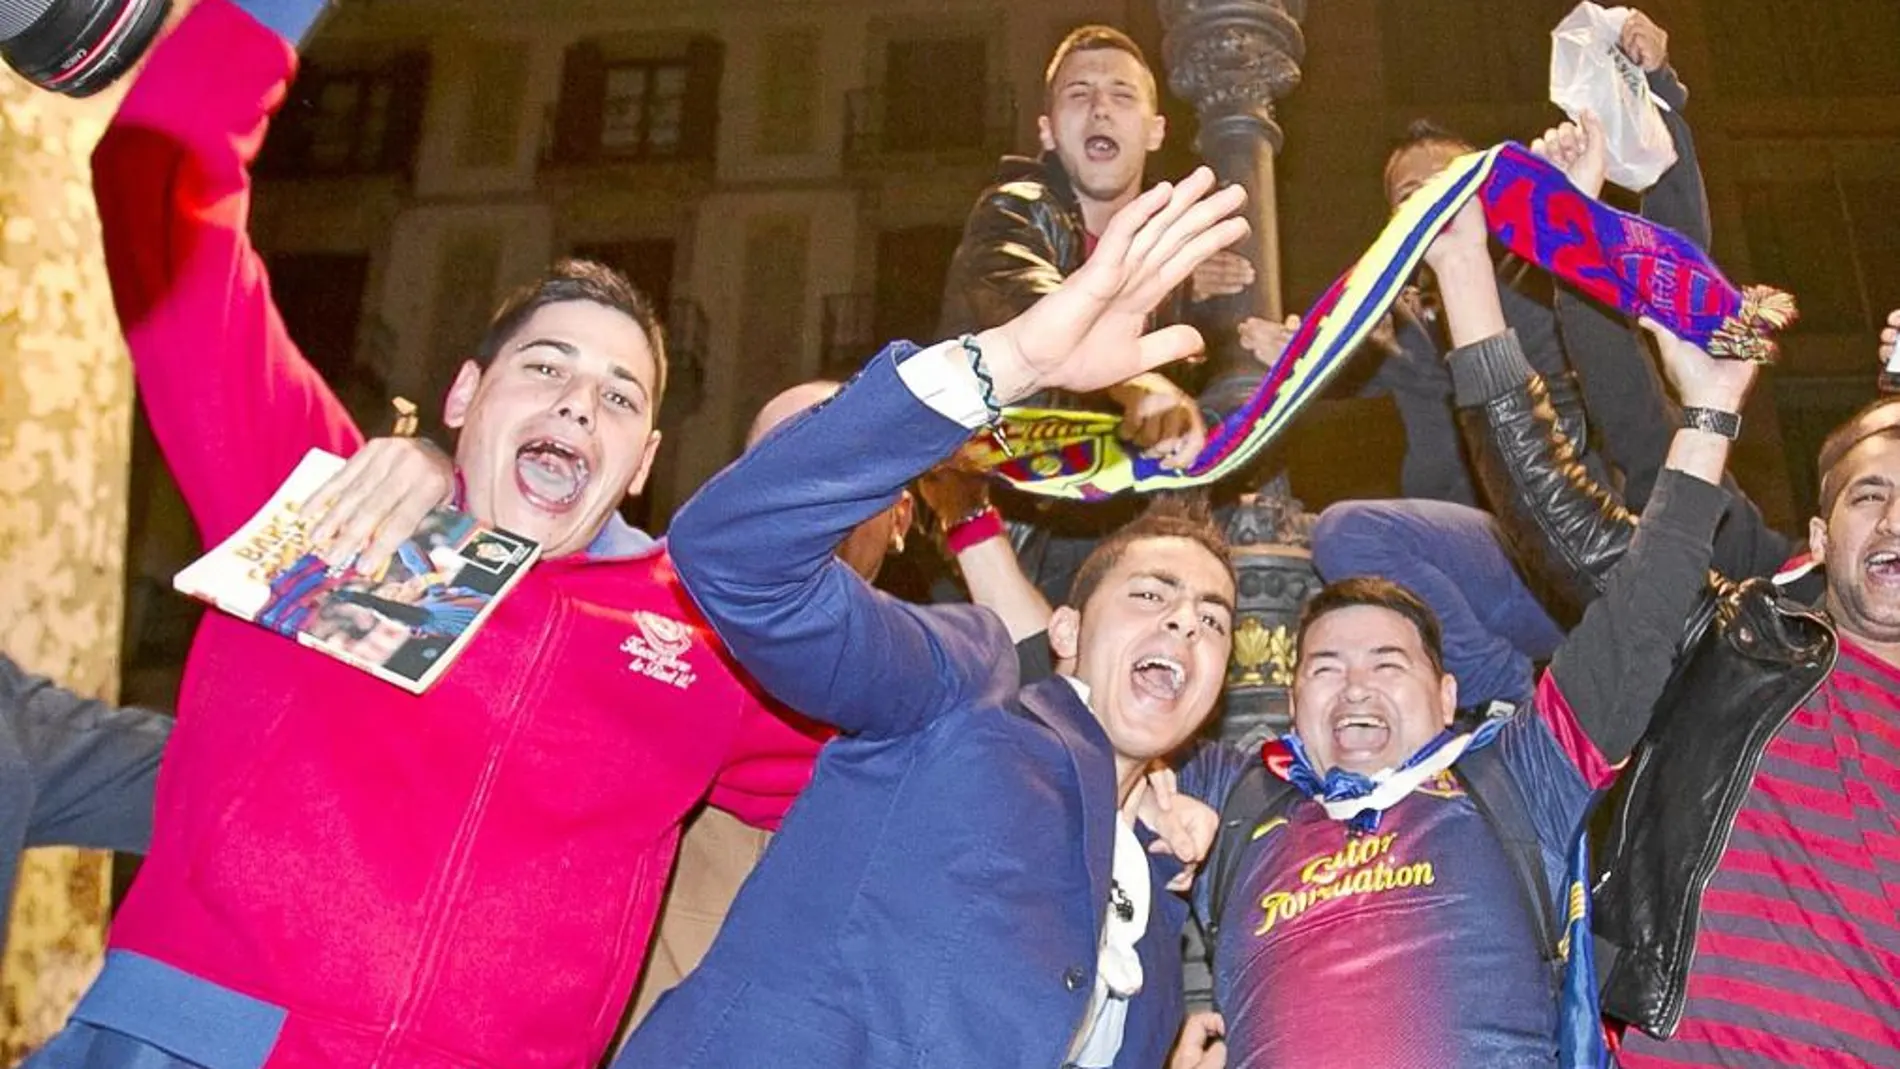 La afición barcelonista celebró anoche el triunfo en Canaletas